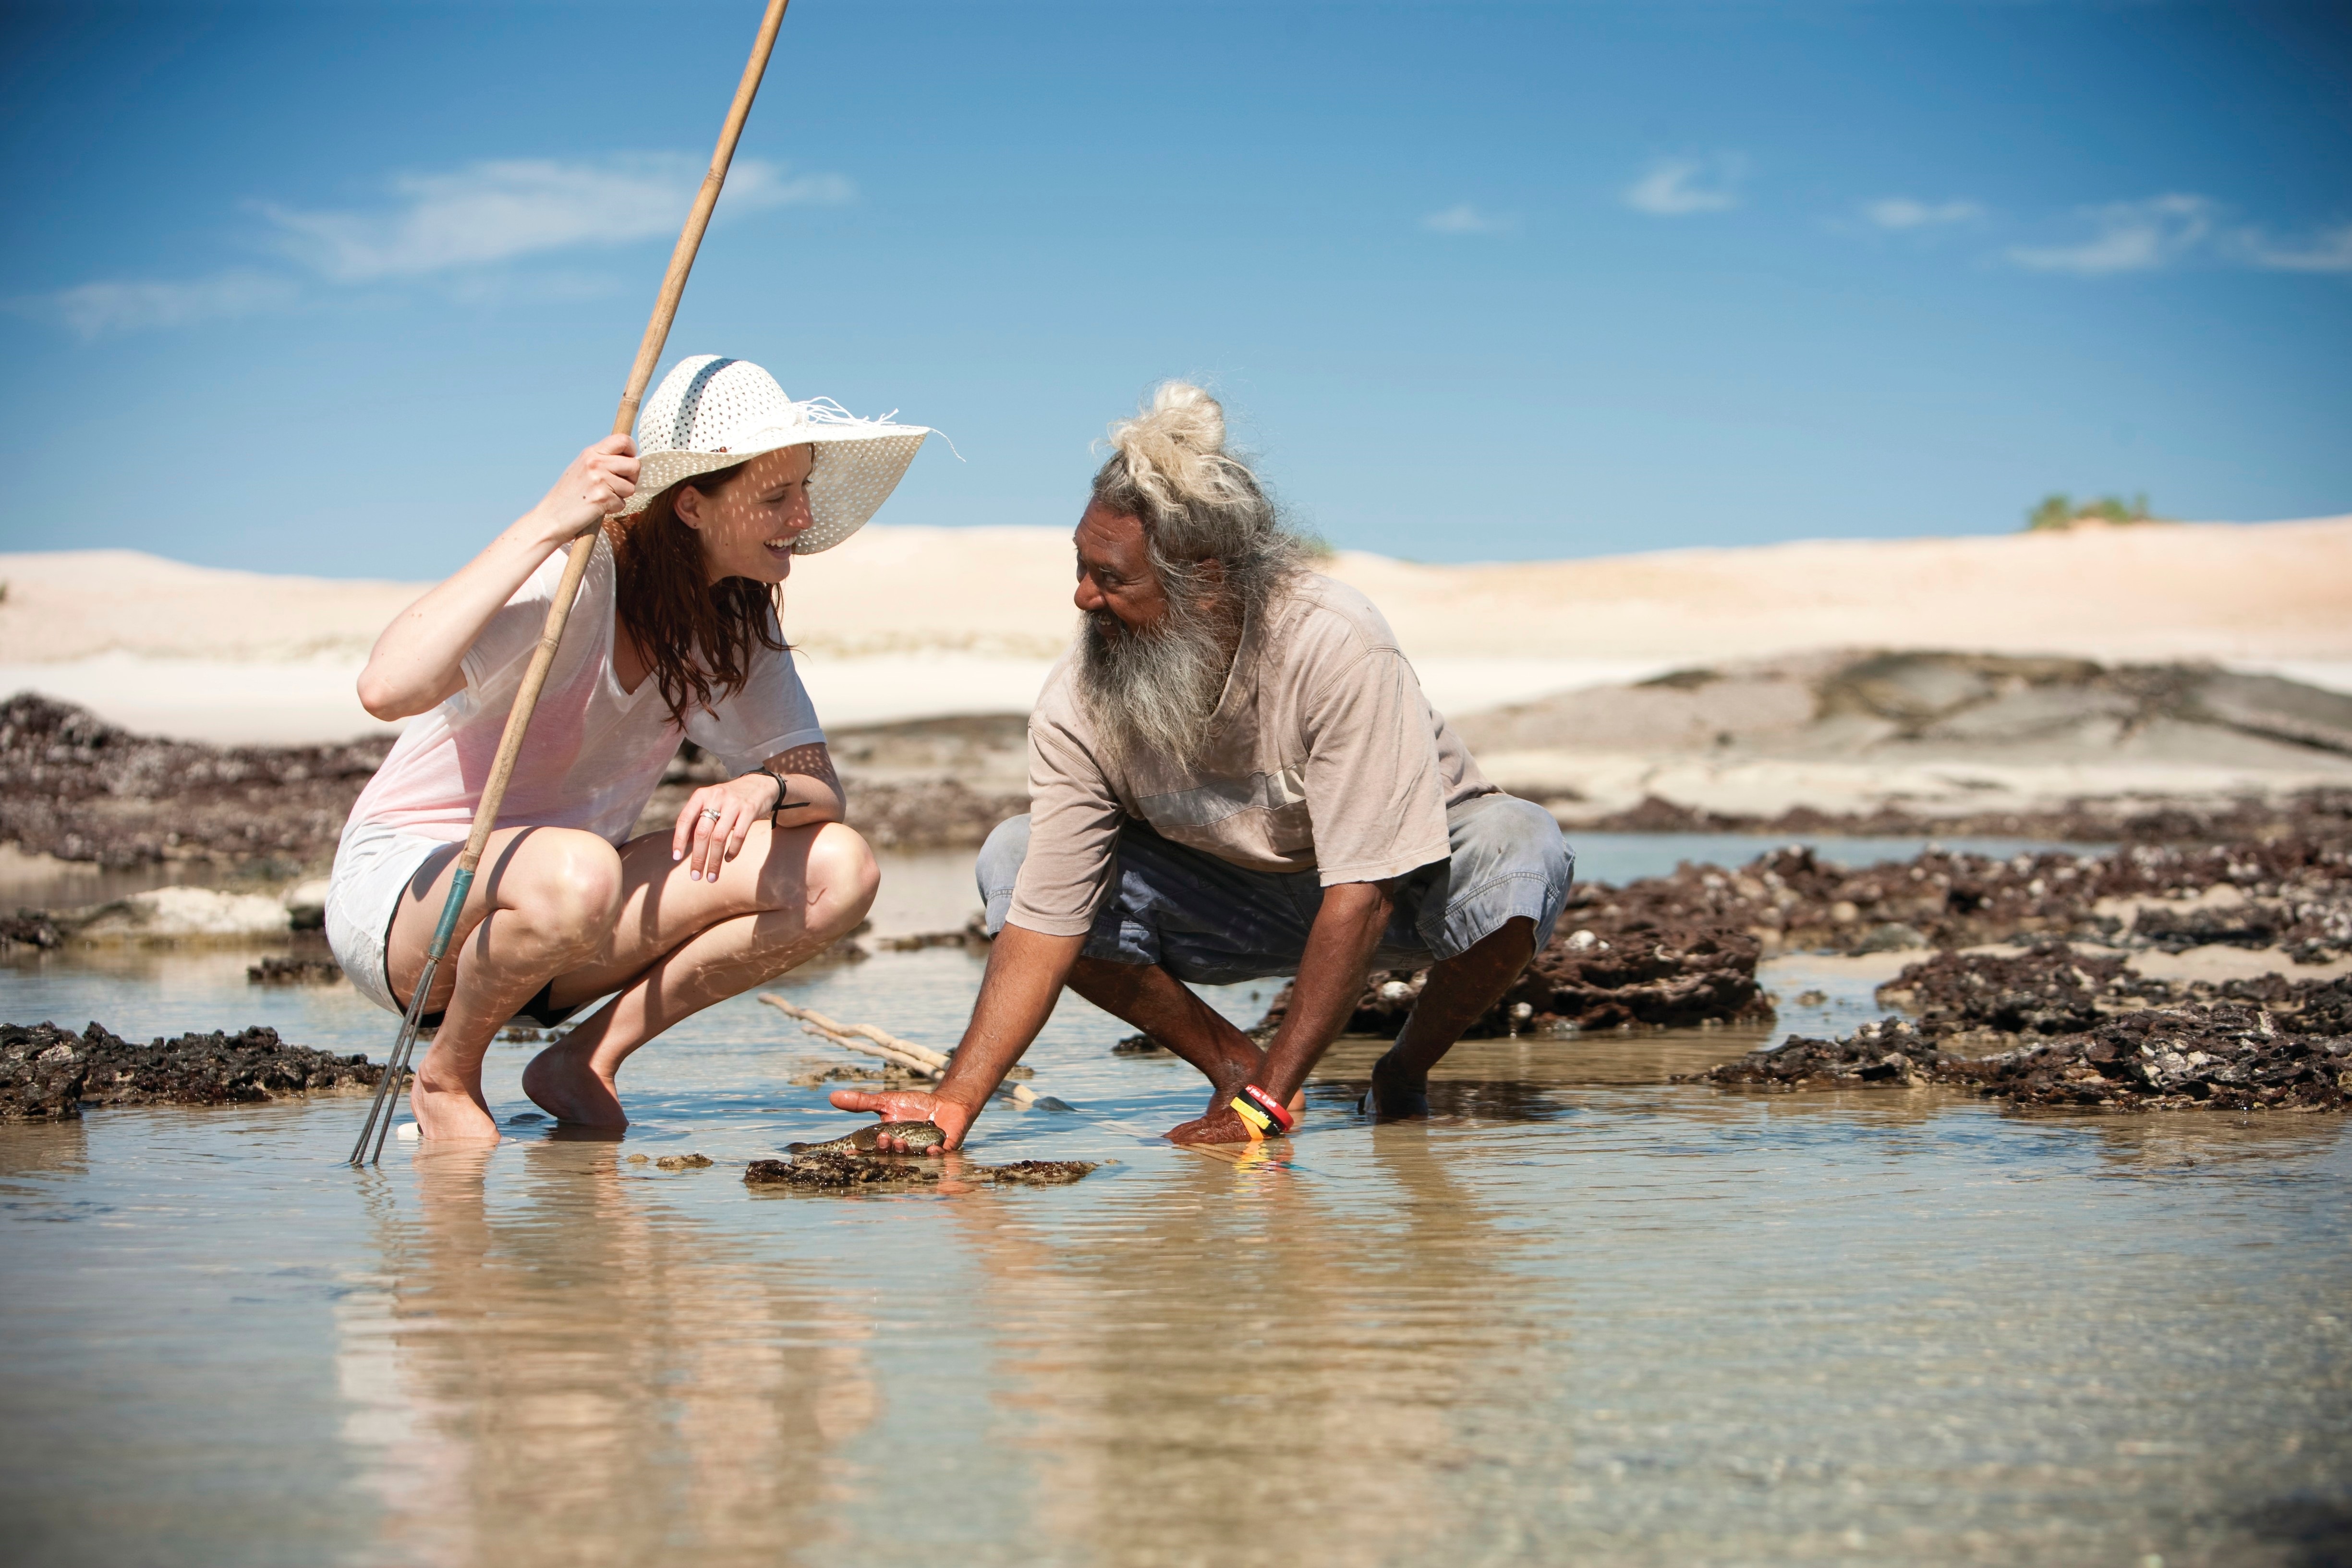 Aboriginal cultures - Tourism Australia